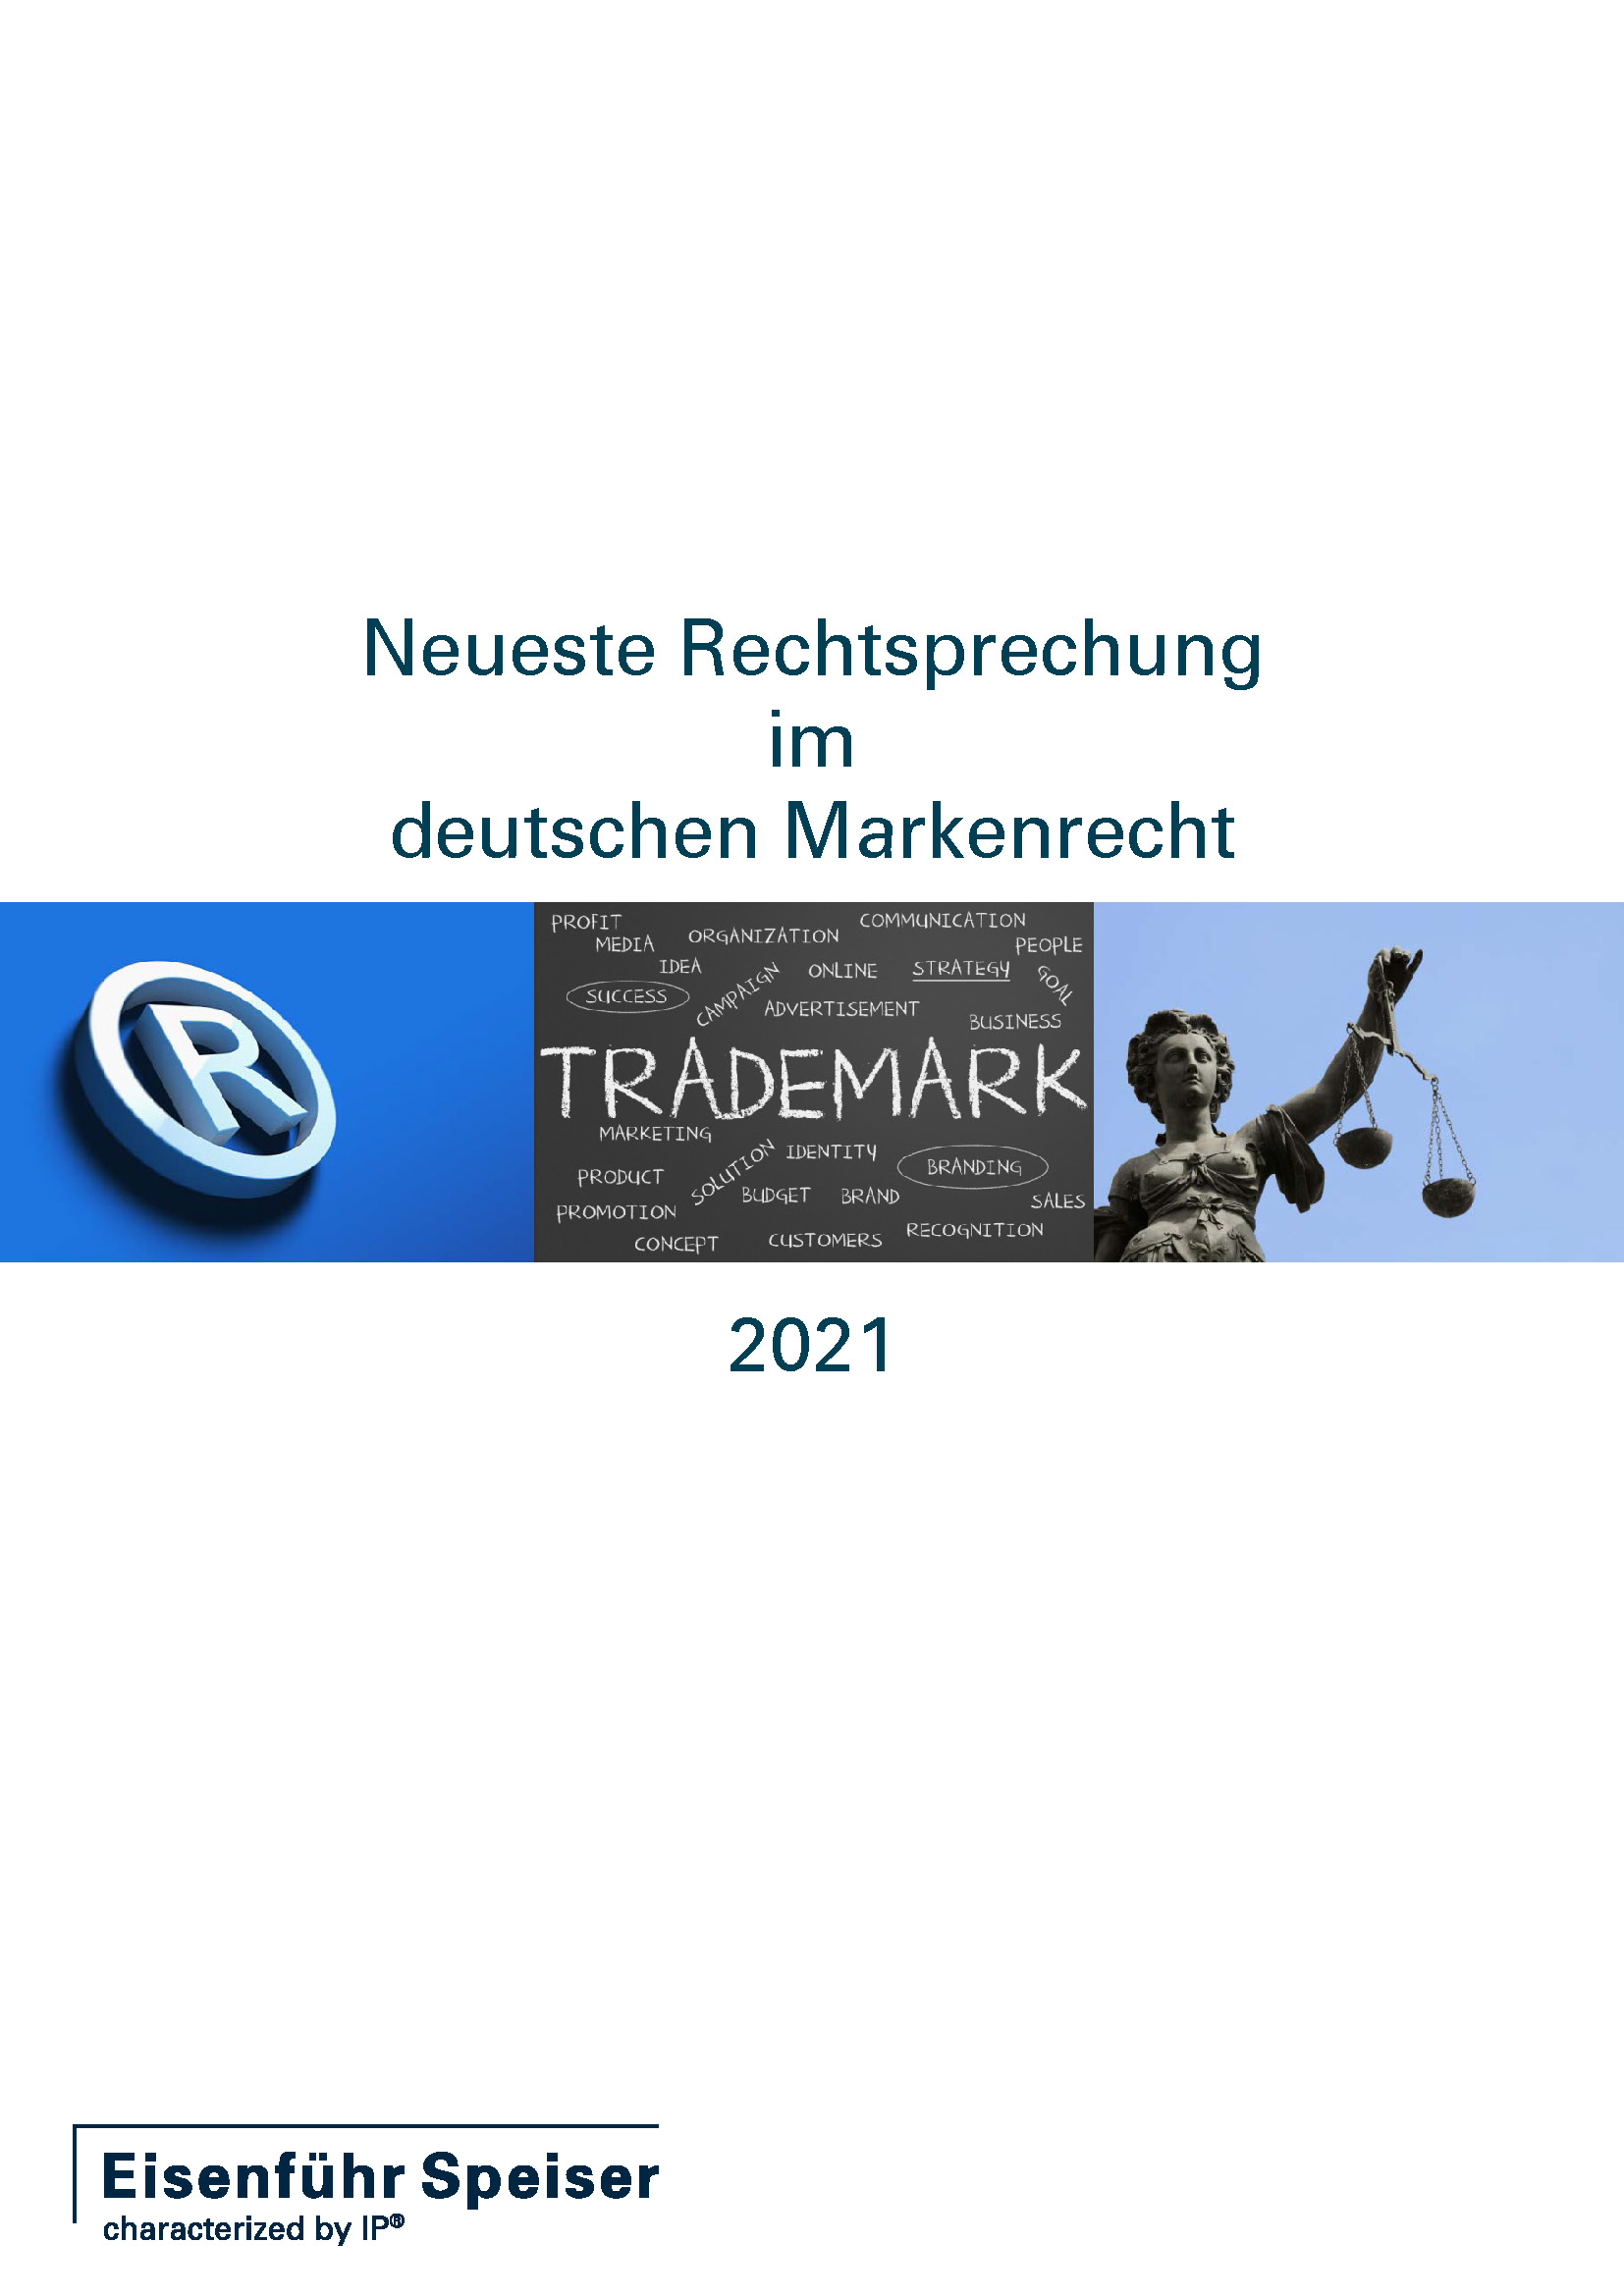 Neueste Rechtsprechung im deutschen Markenrecht